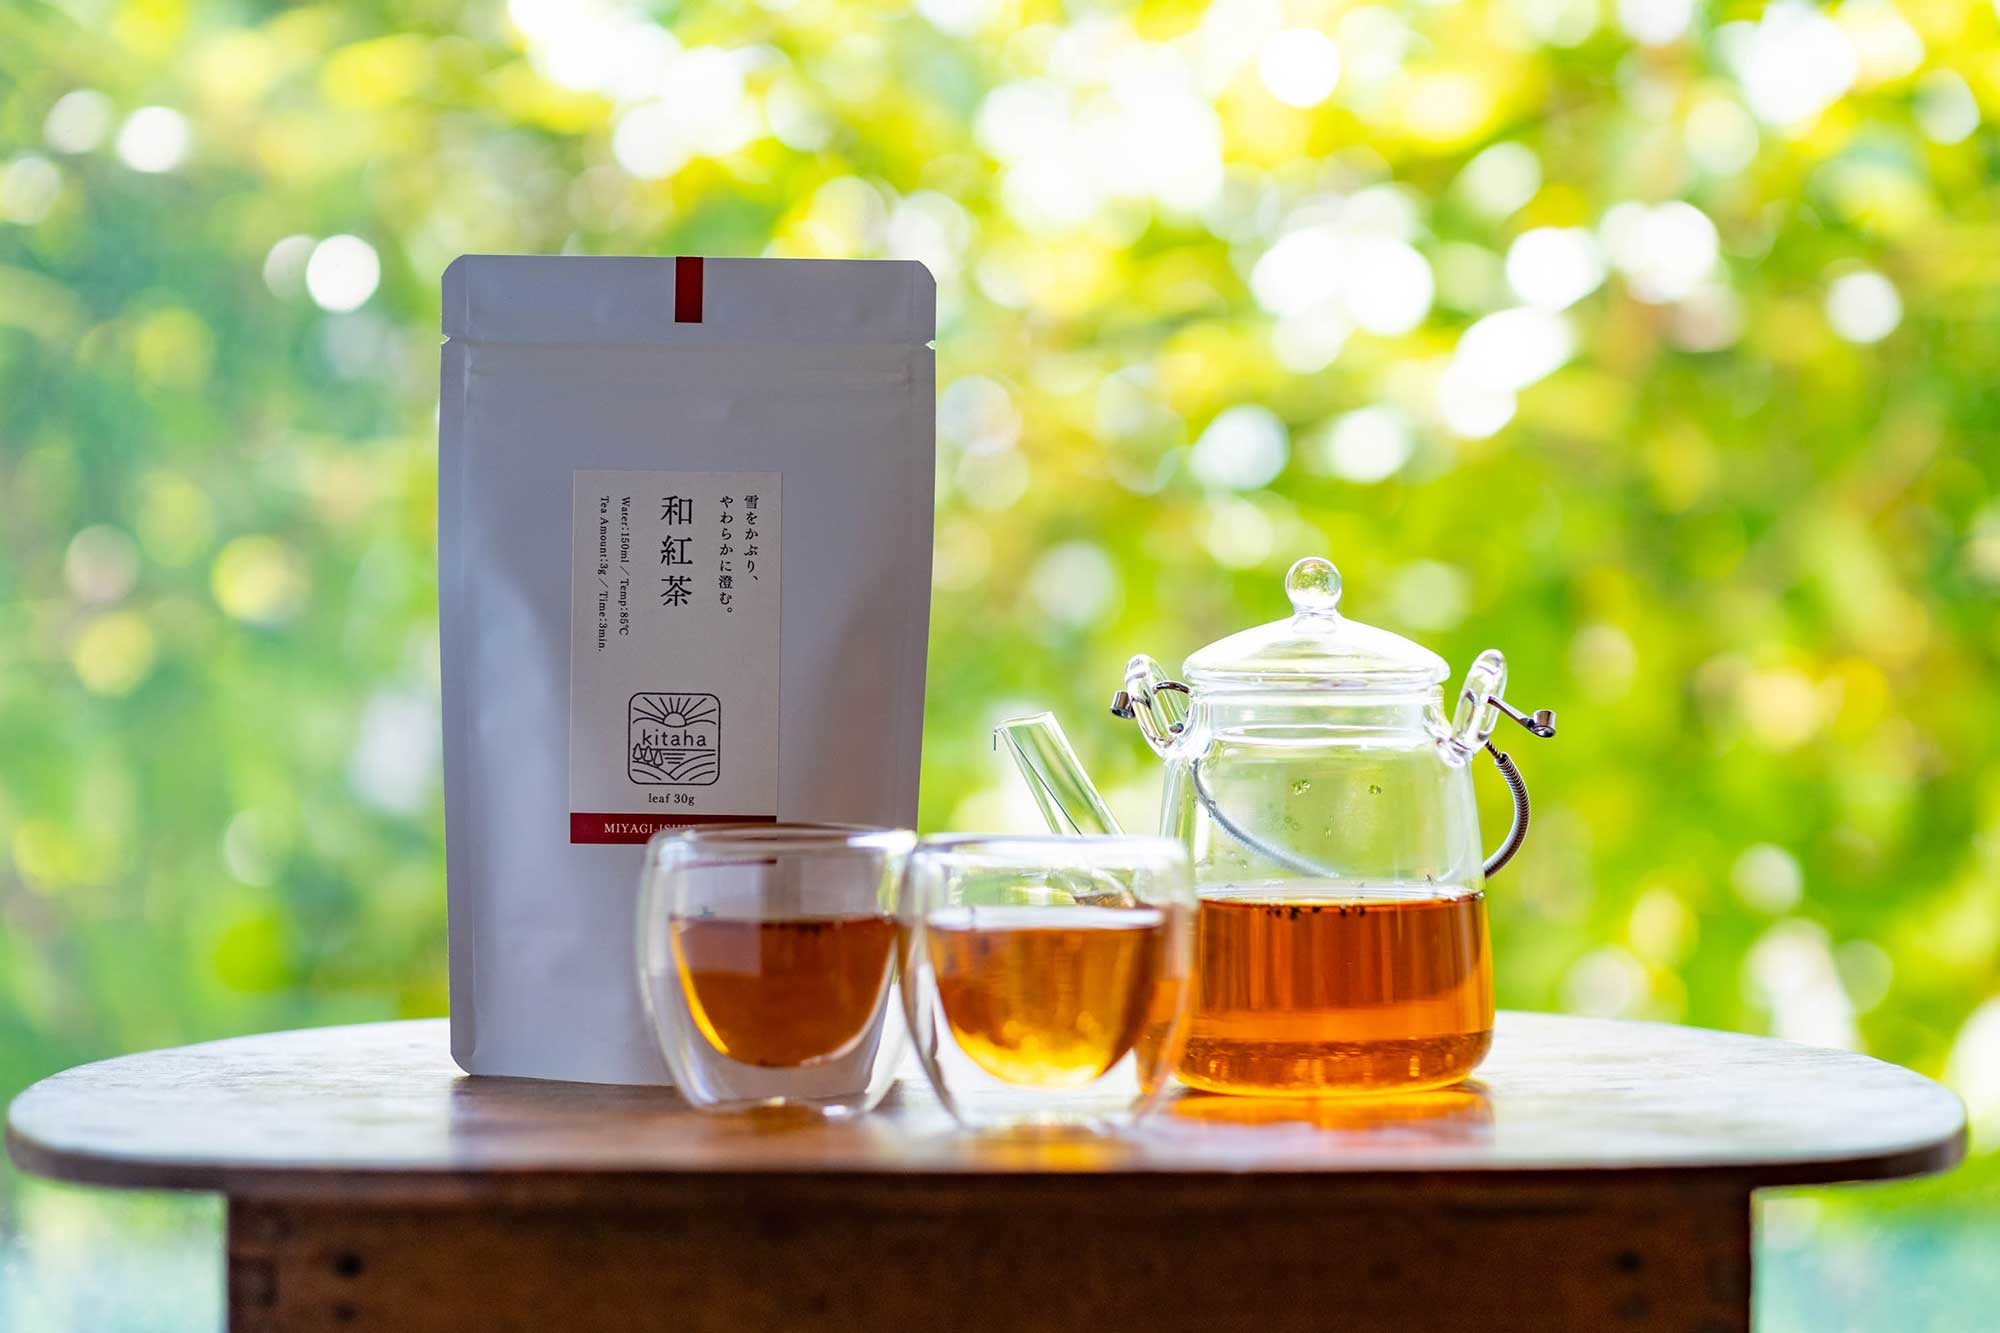 和紅茶「kitaha」。えぐみが少なくすっきり甘い、優しい味わい